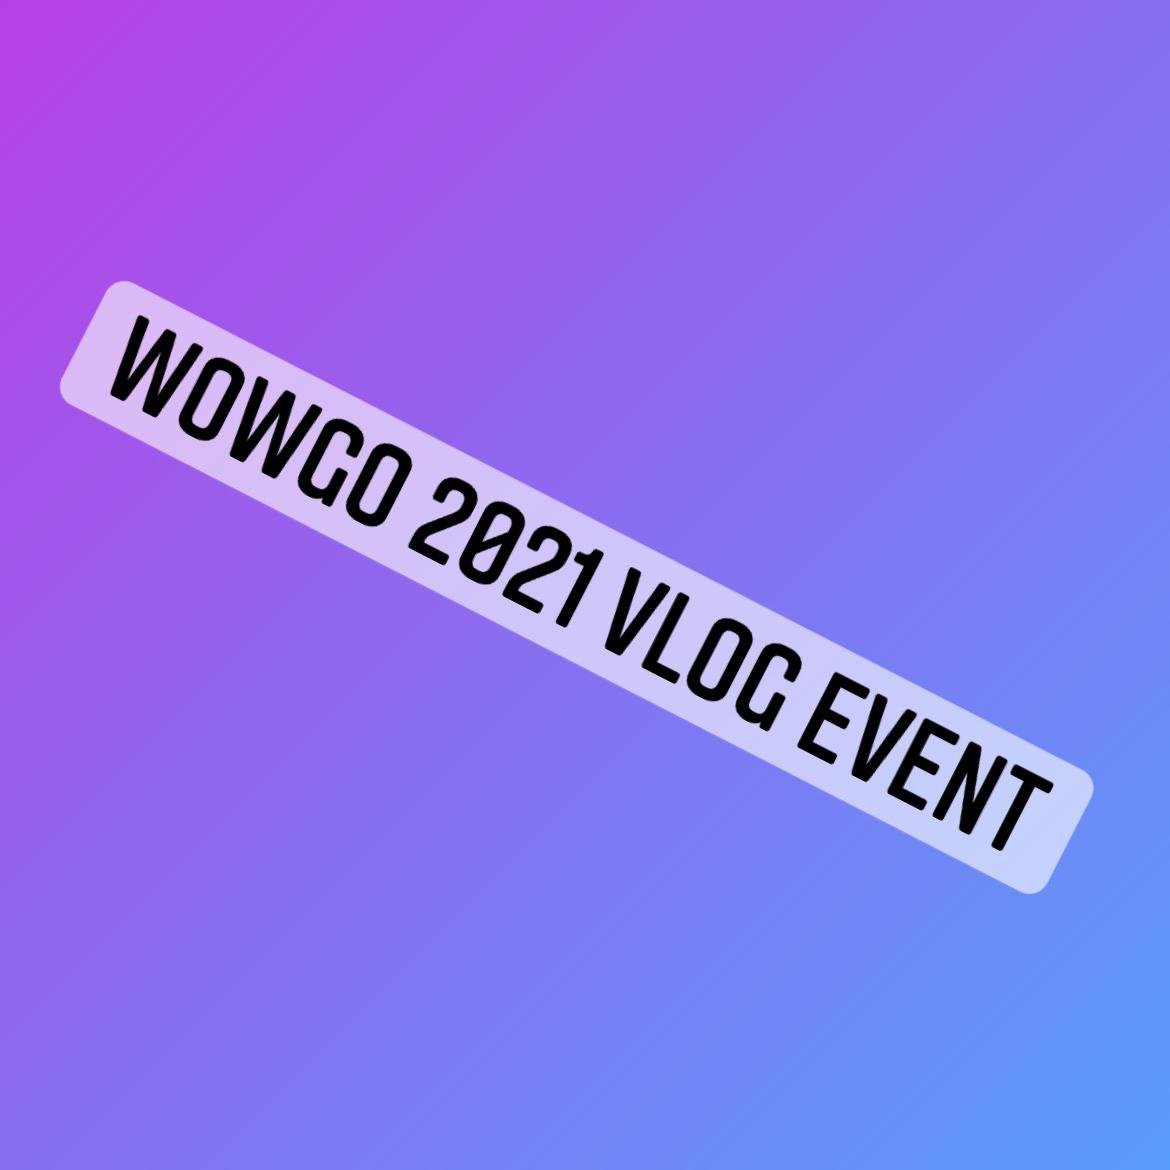 Wowgo 2021 Vlog Event! - WOWGO BOARD